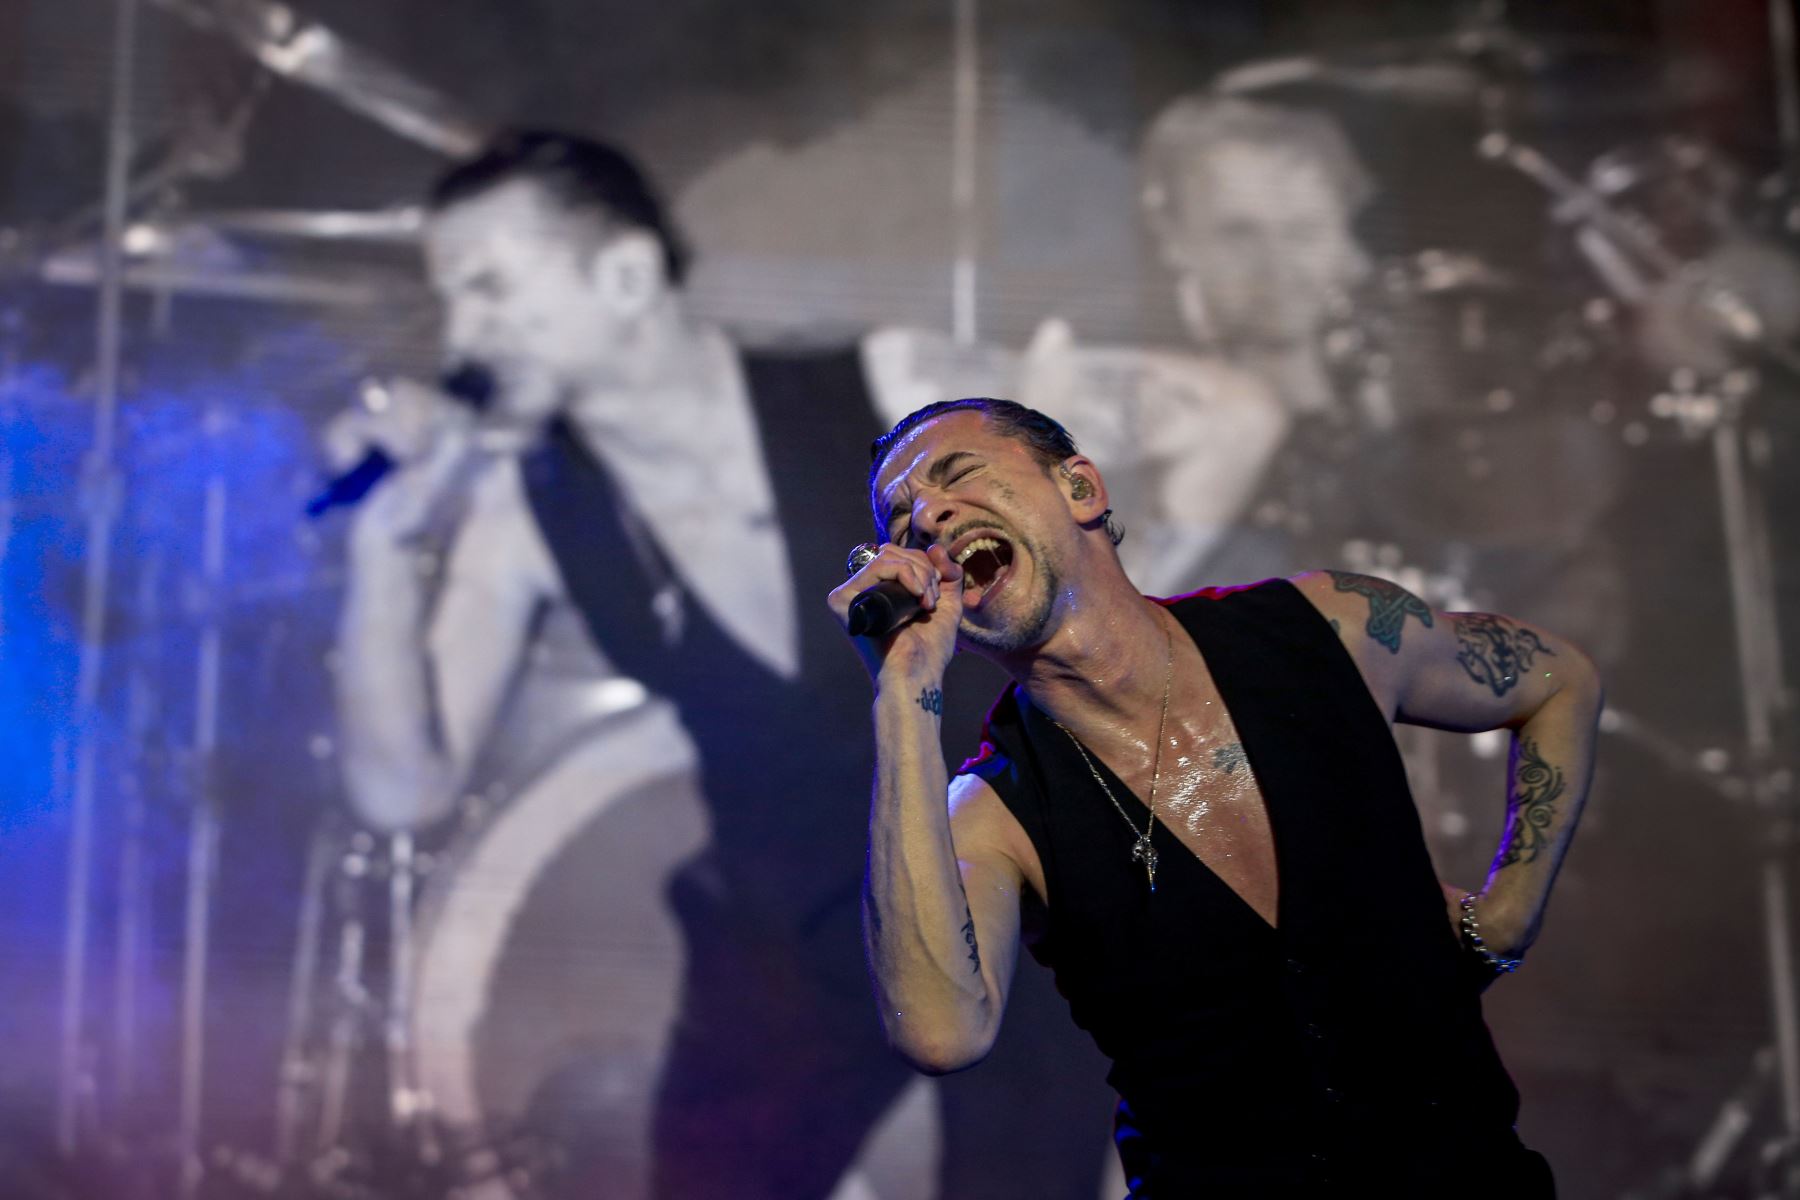 Depeche Mode llenó la noche y parte de la madrugada limeña con su único show.Foto:ANDINA/Difusión